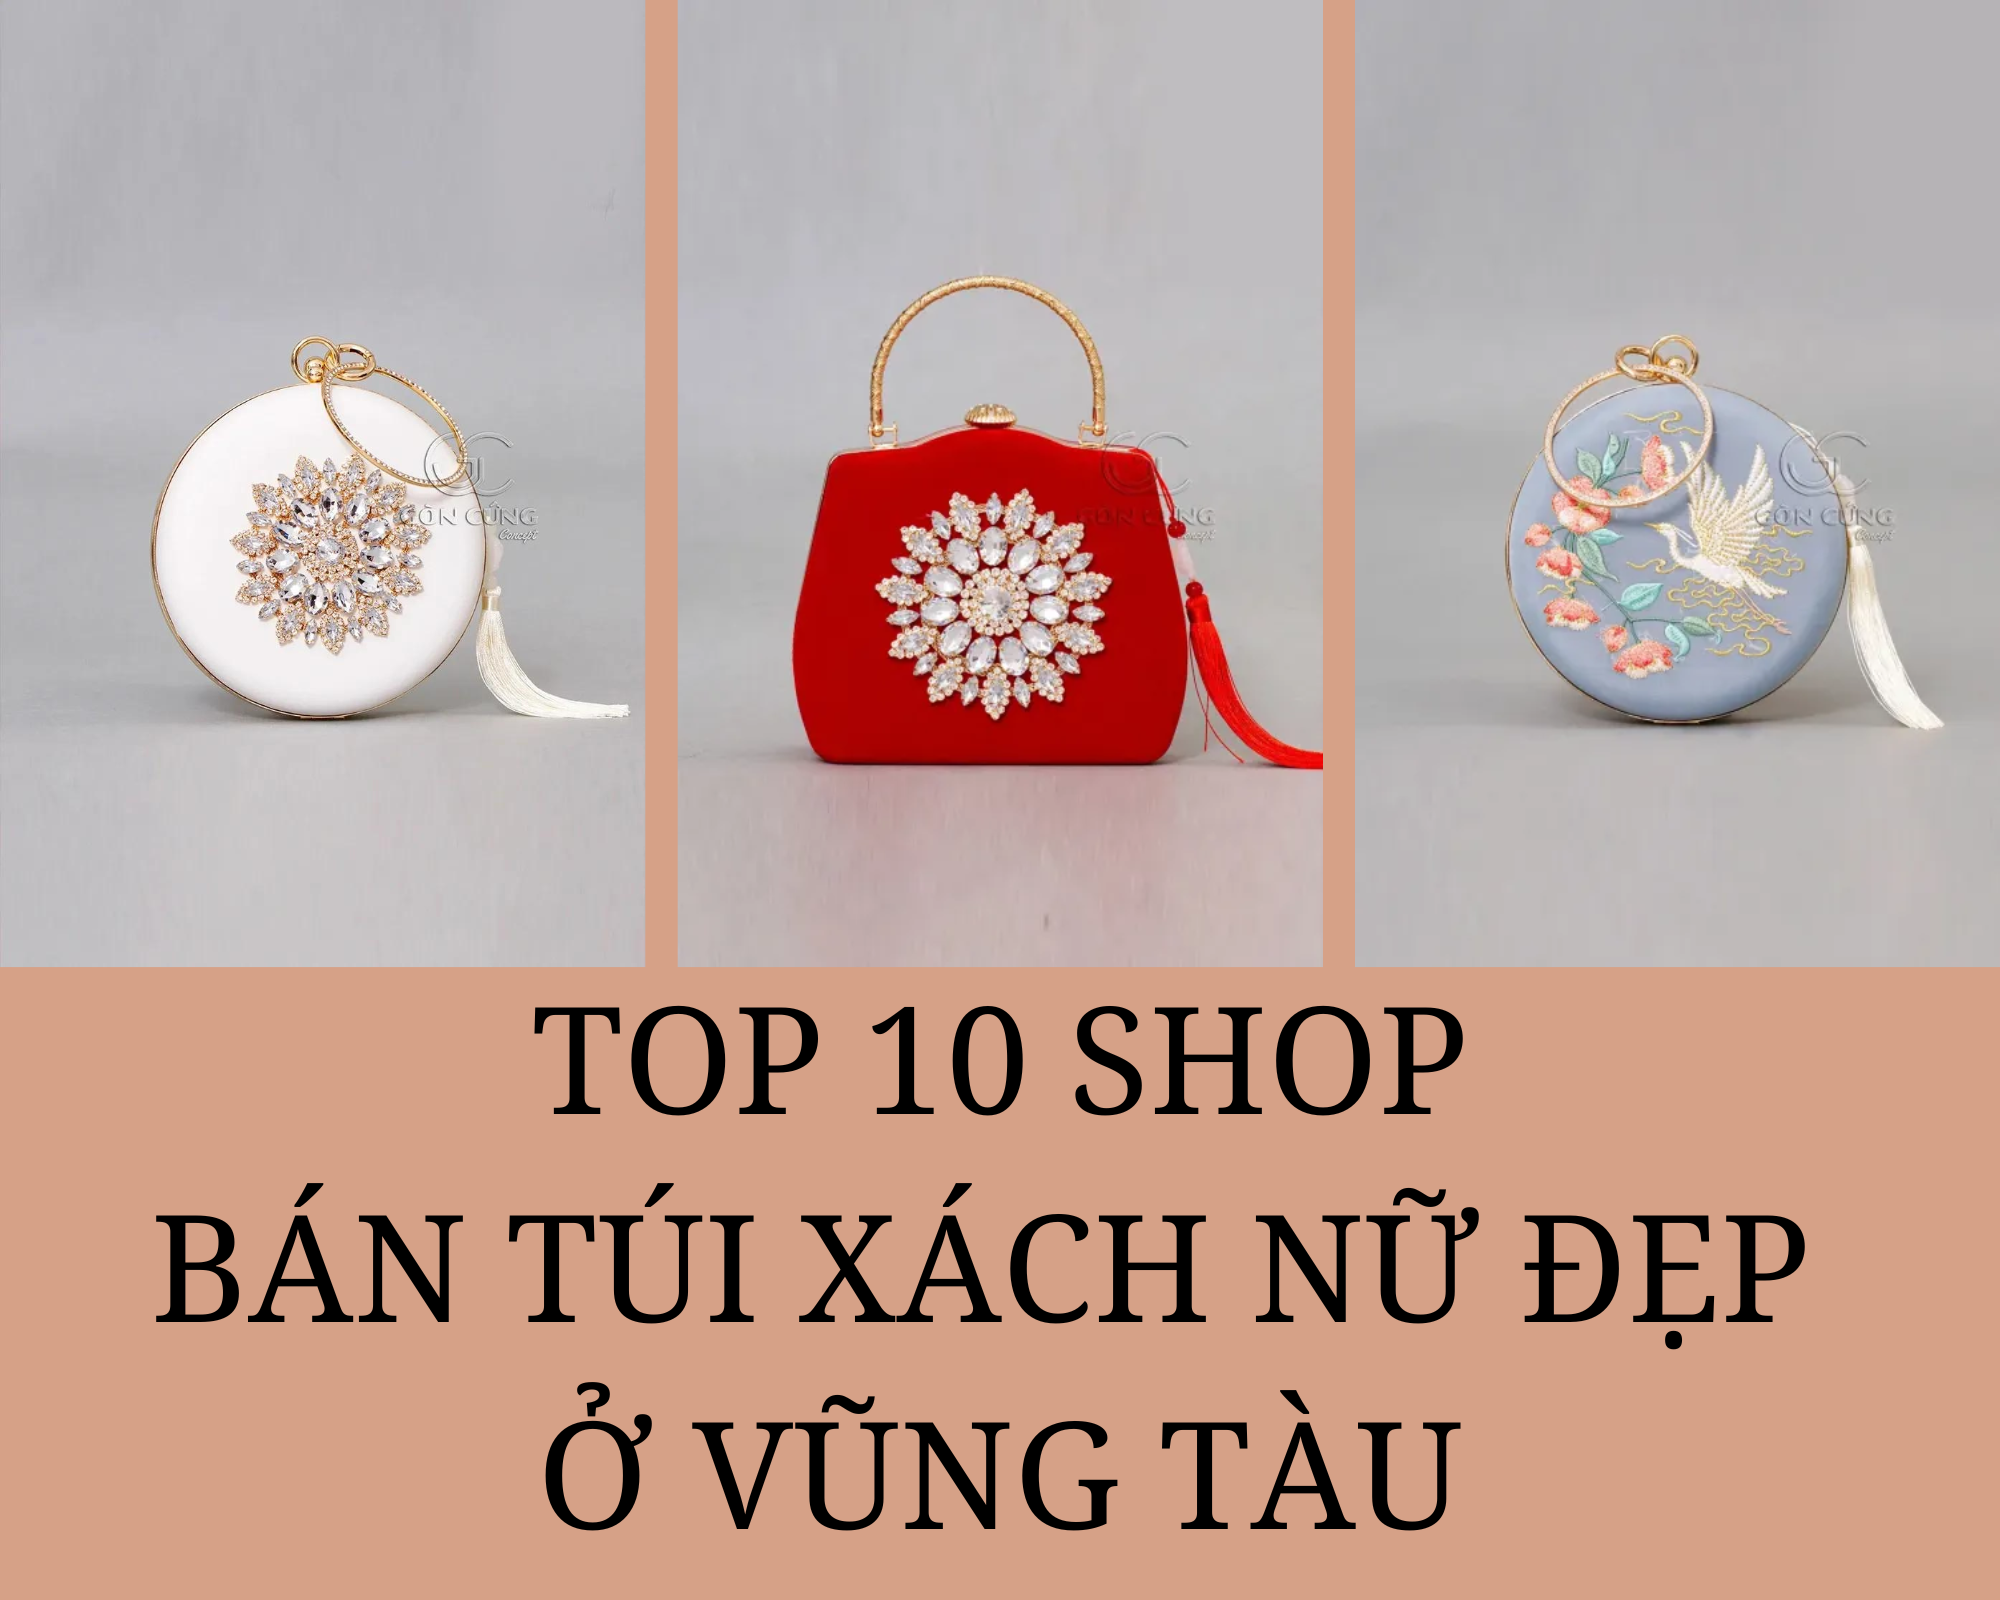 Top 10 shop bán túi xách nữ đẹp ở Vũng Tàu nhất định bạn phải biết